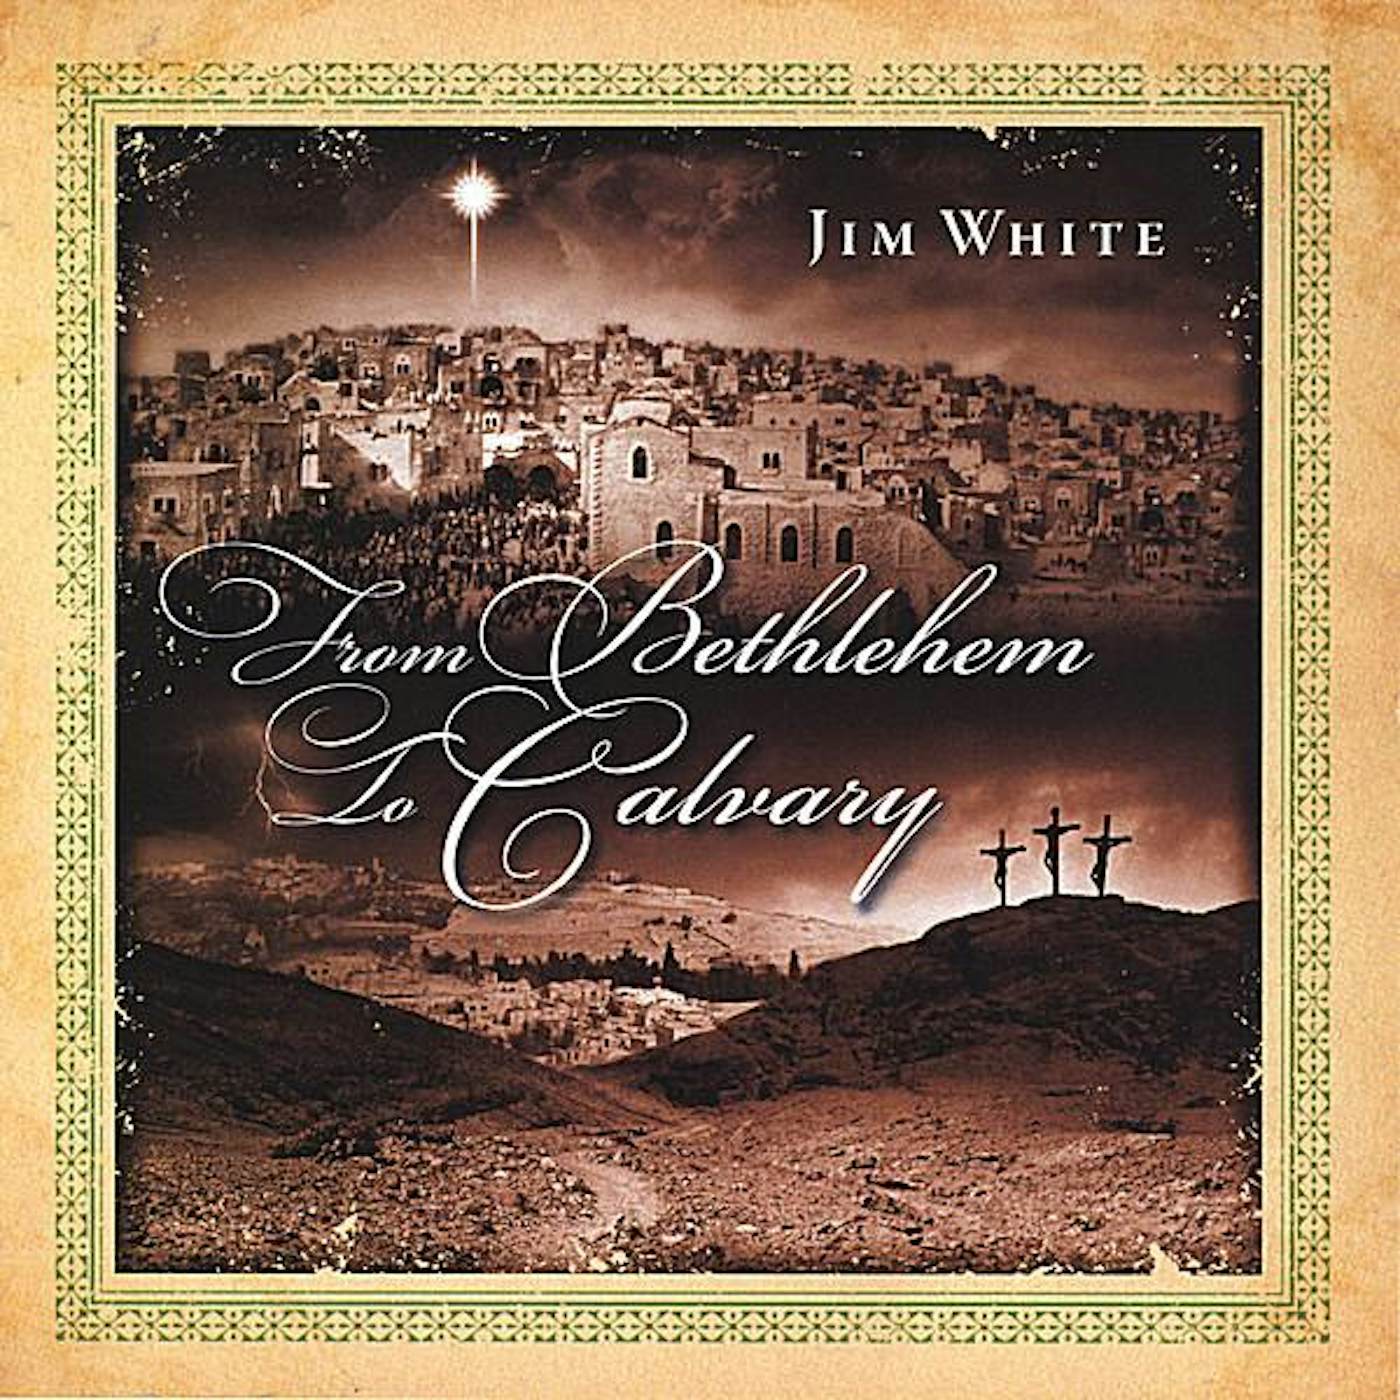 Jim White FROM BETHLEHEM TO CALVARY CD